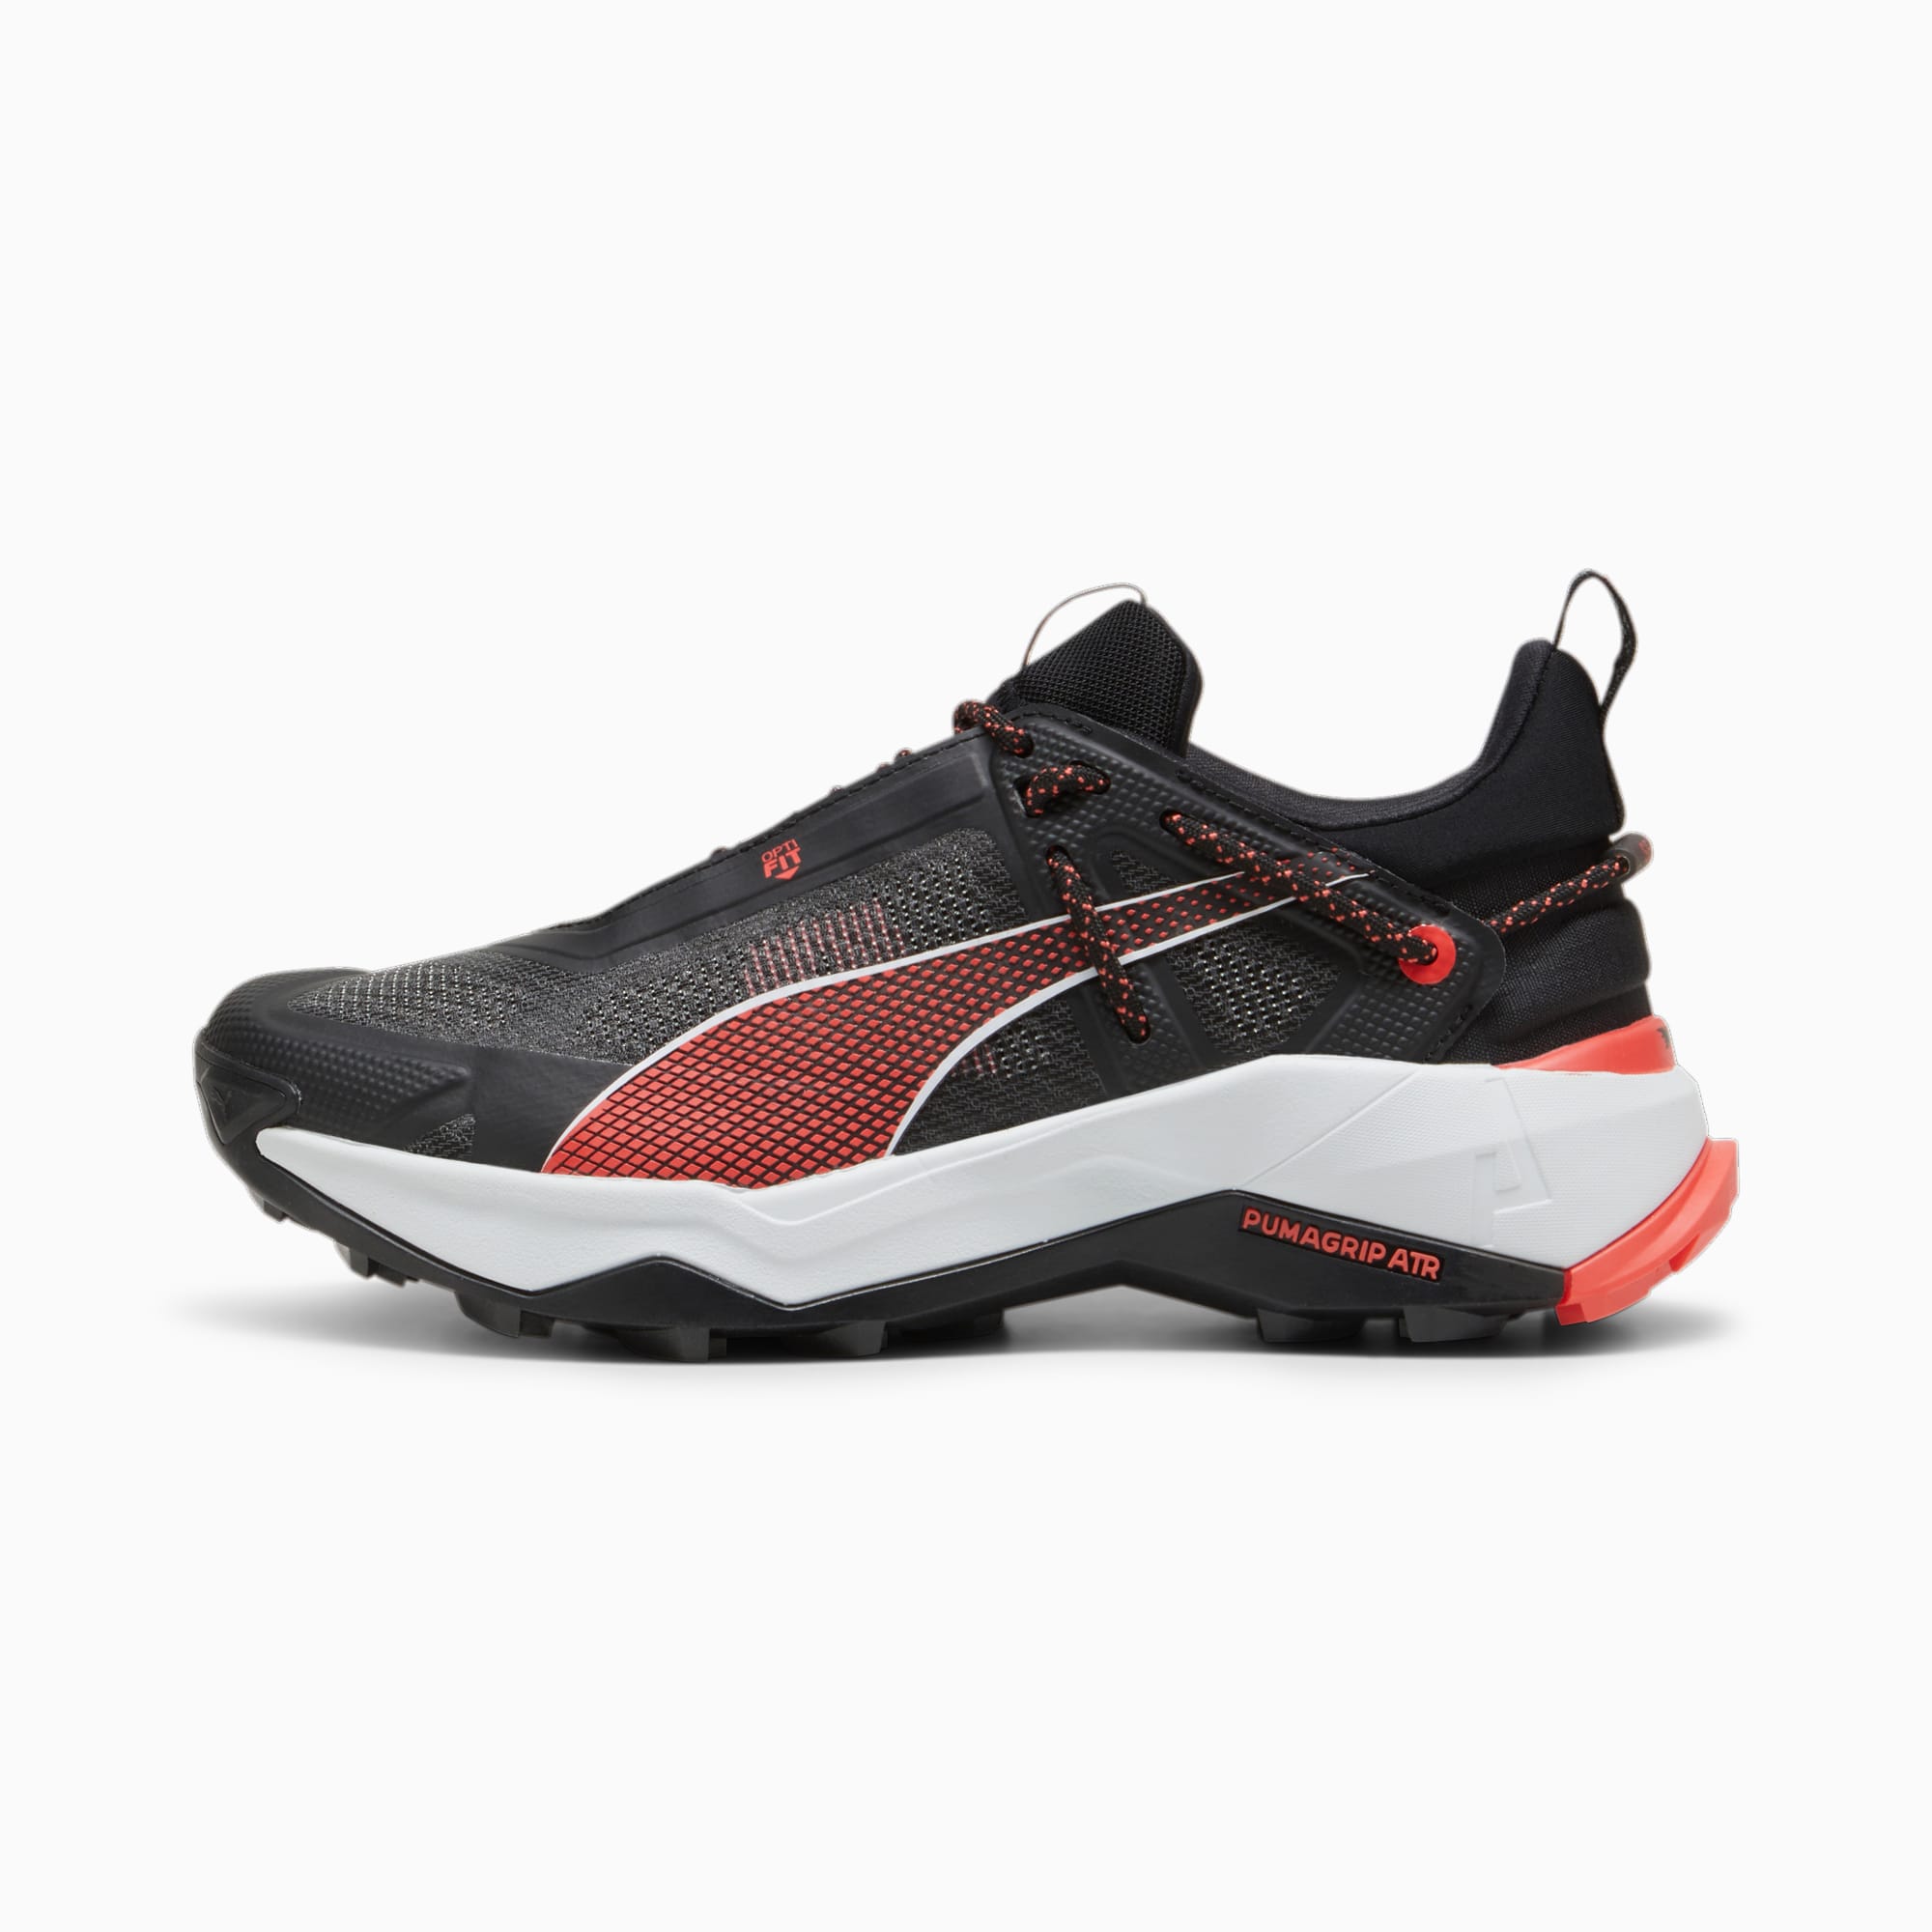 puma chaussures de randonnée nitro™ femme, noir/rouge/argent, taille 35.5, chaussures